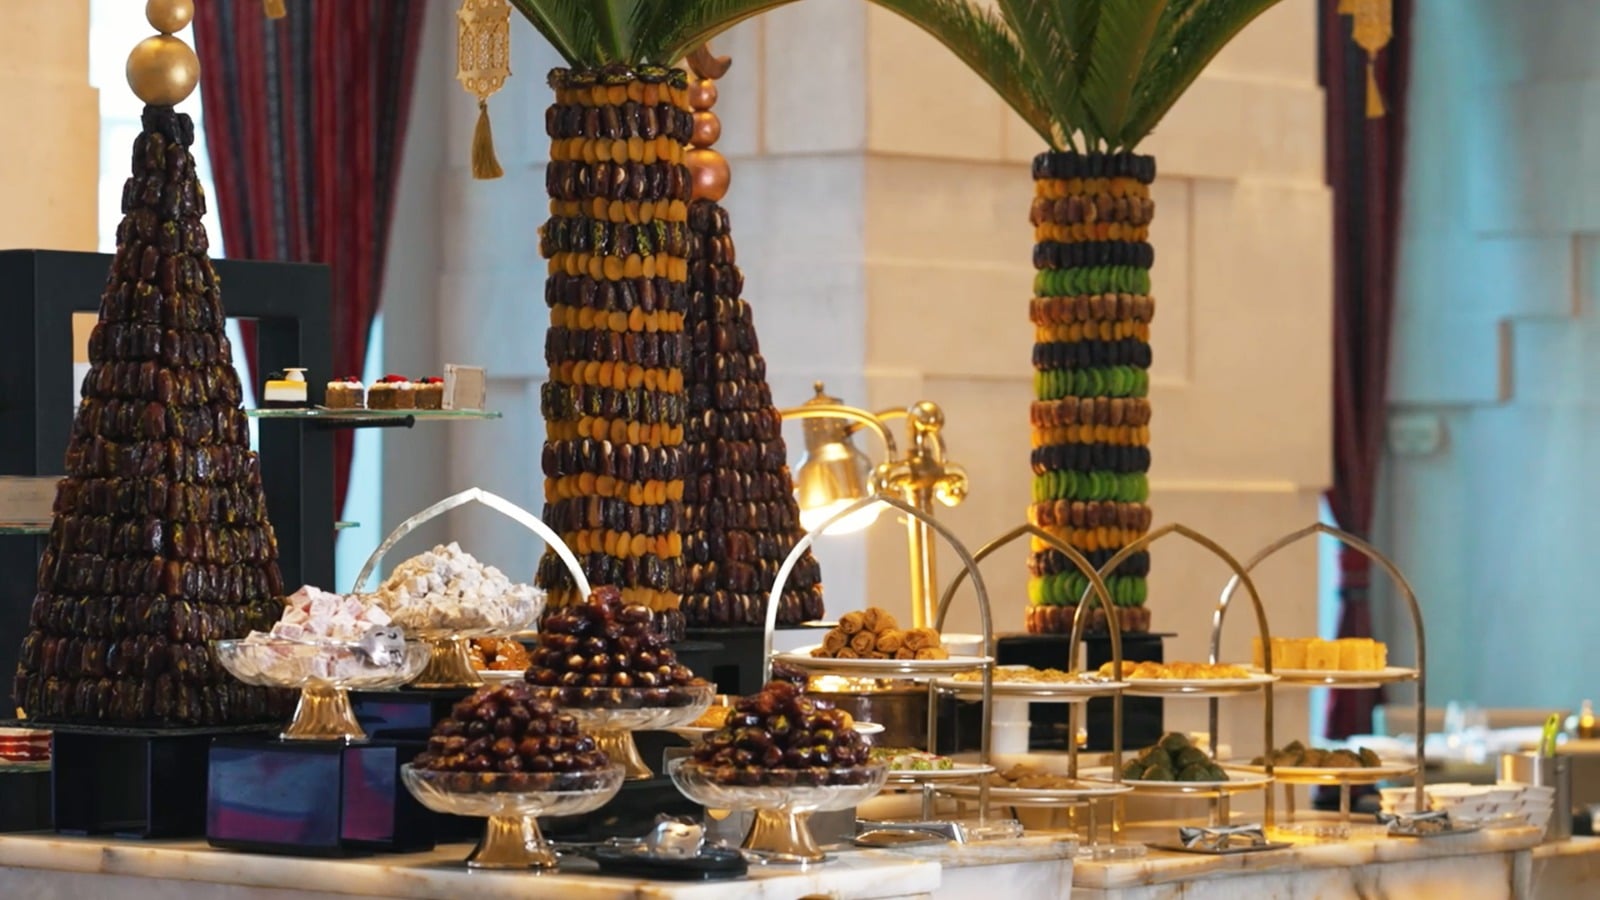 احتفل بموسم العمل الجماعي في هذا الشهر الكريم رمضان في فندق شانغريلا دبي